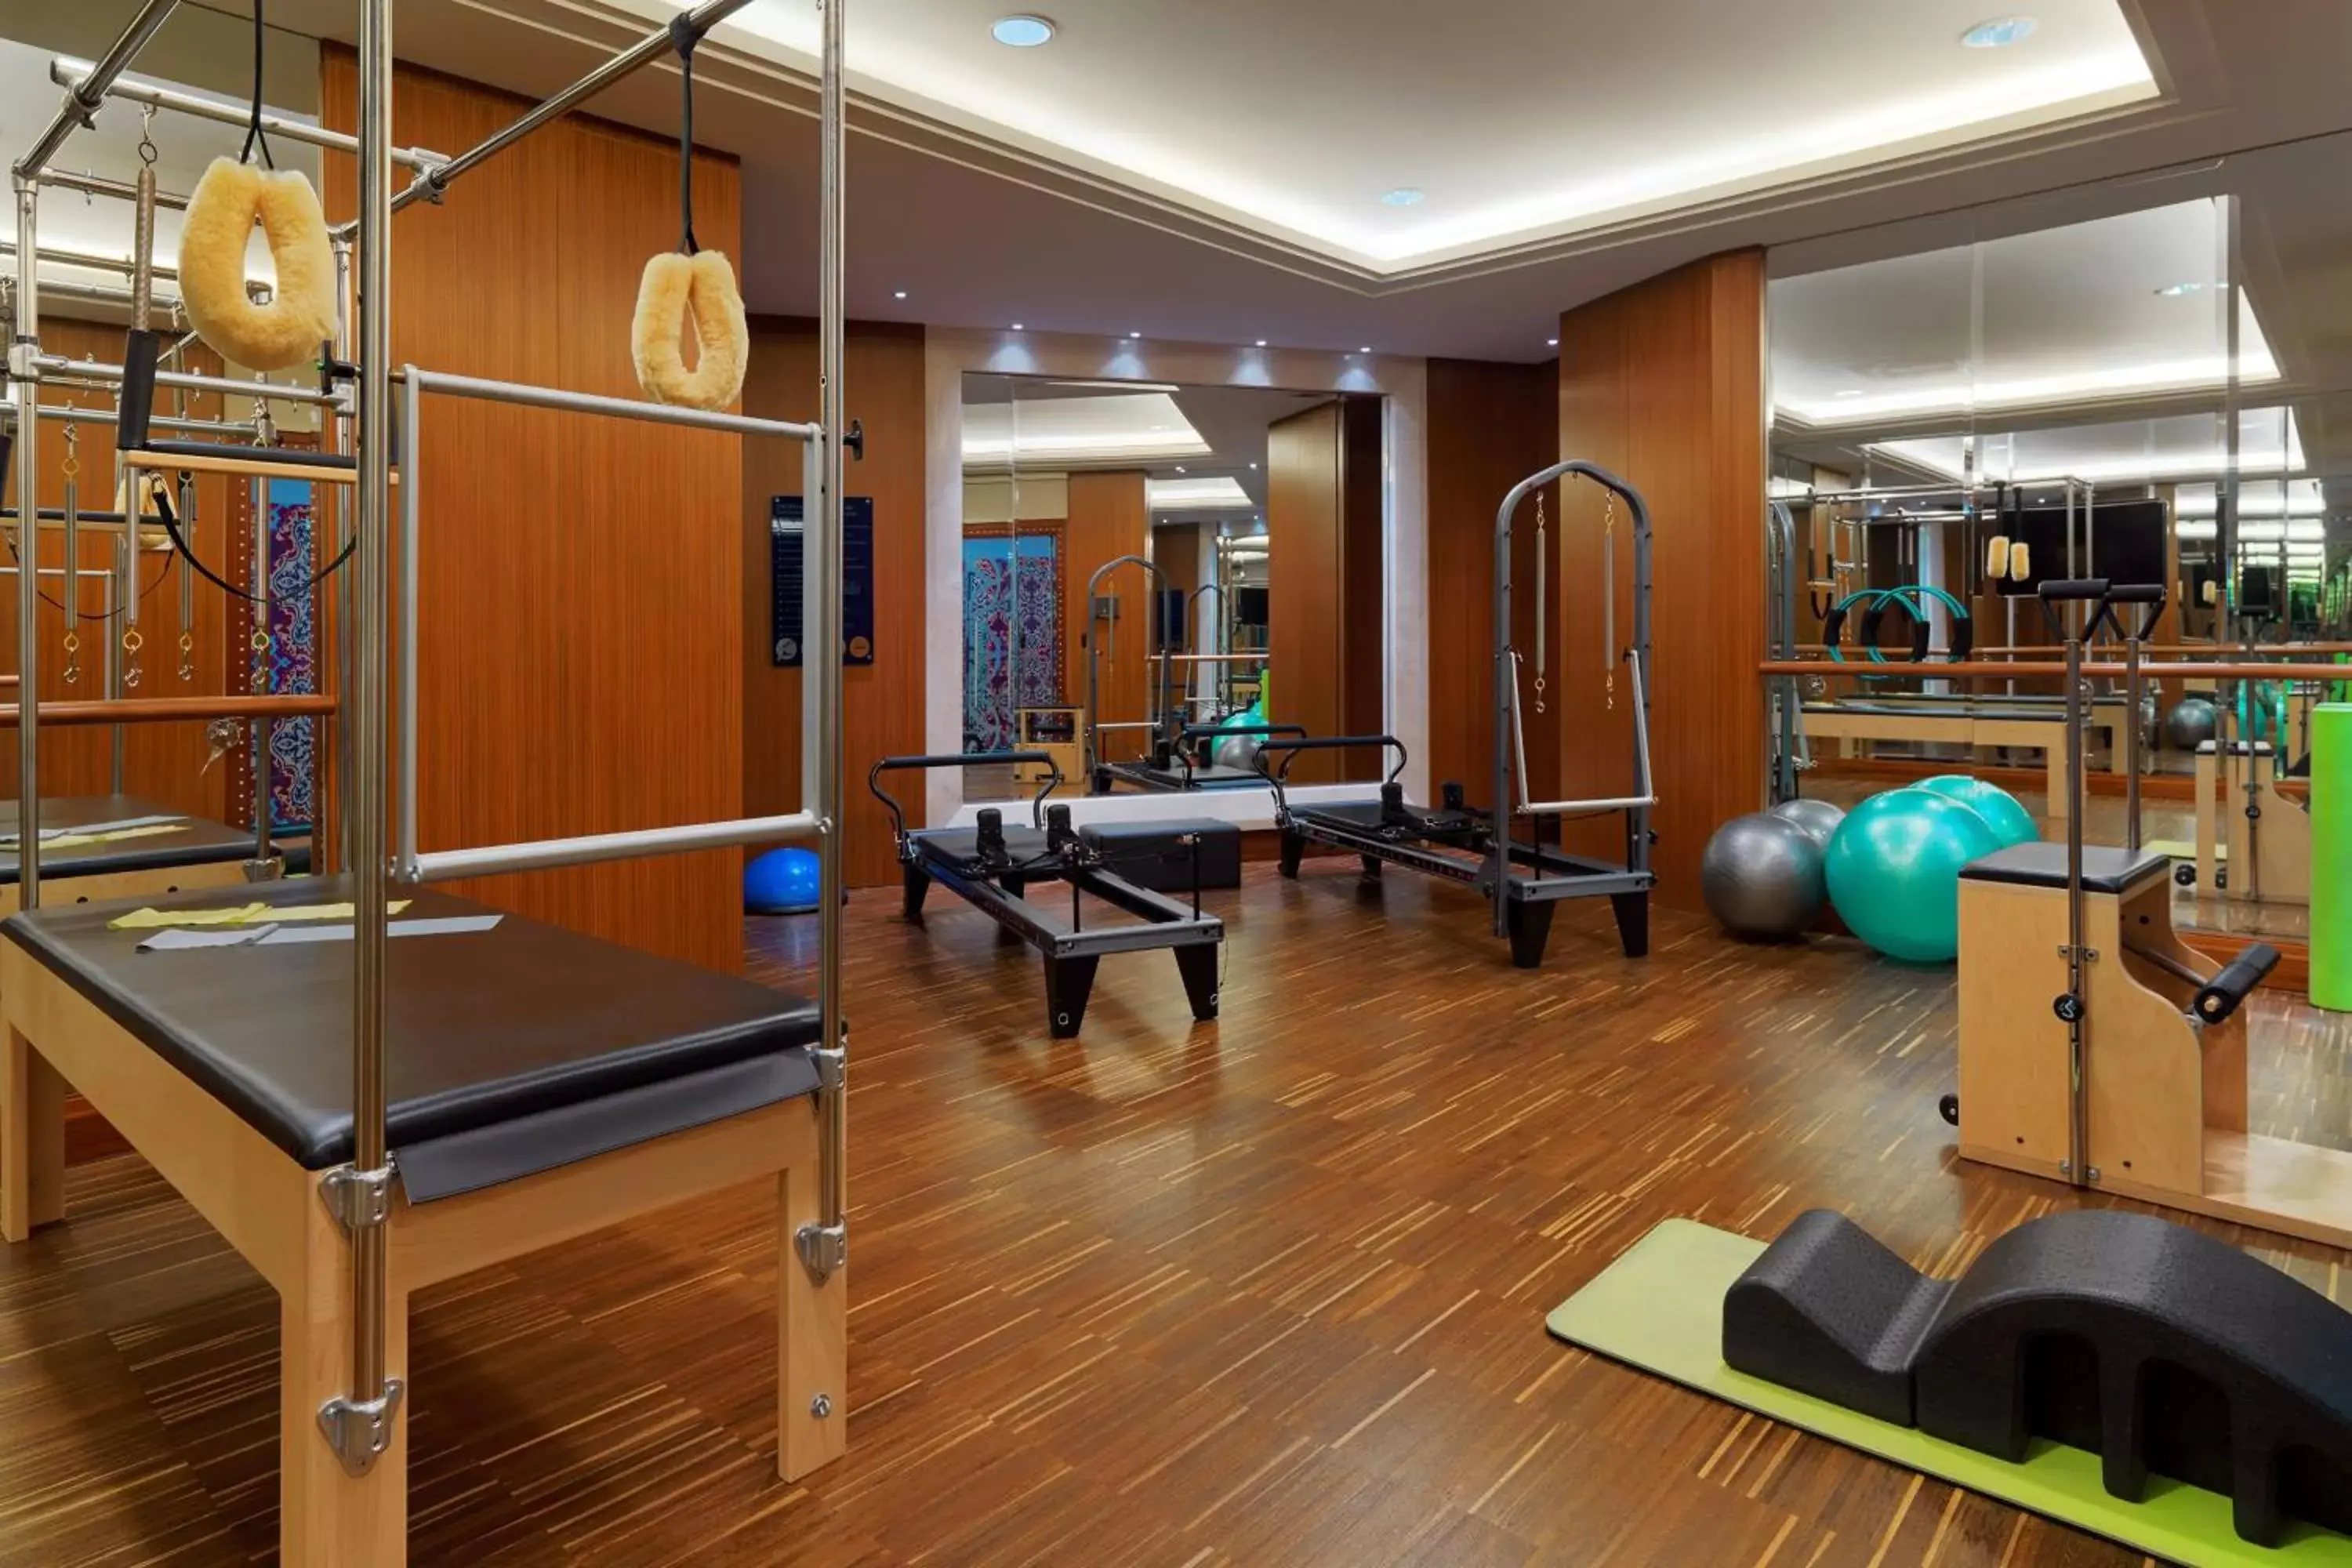 Fitness centre/facilities, Fitness Center/Facilities in JW Marriott Hotel Ankara